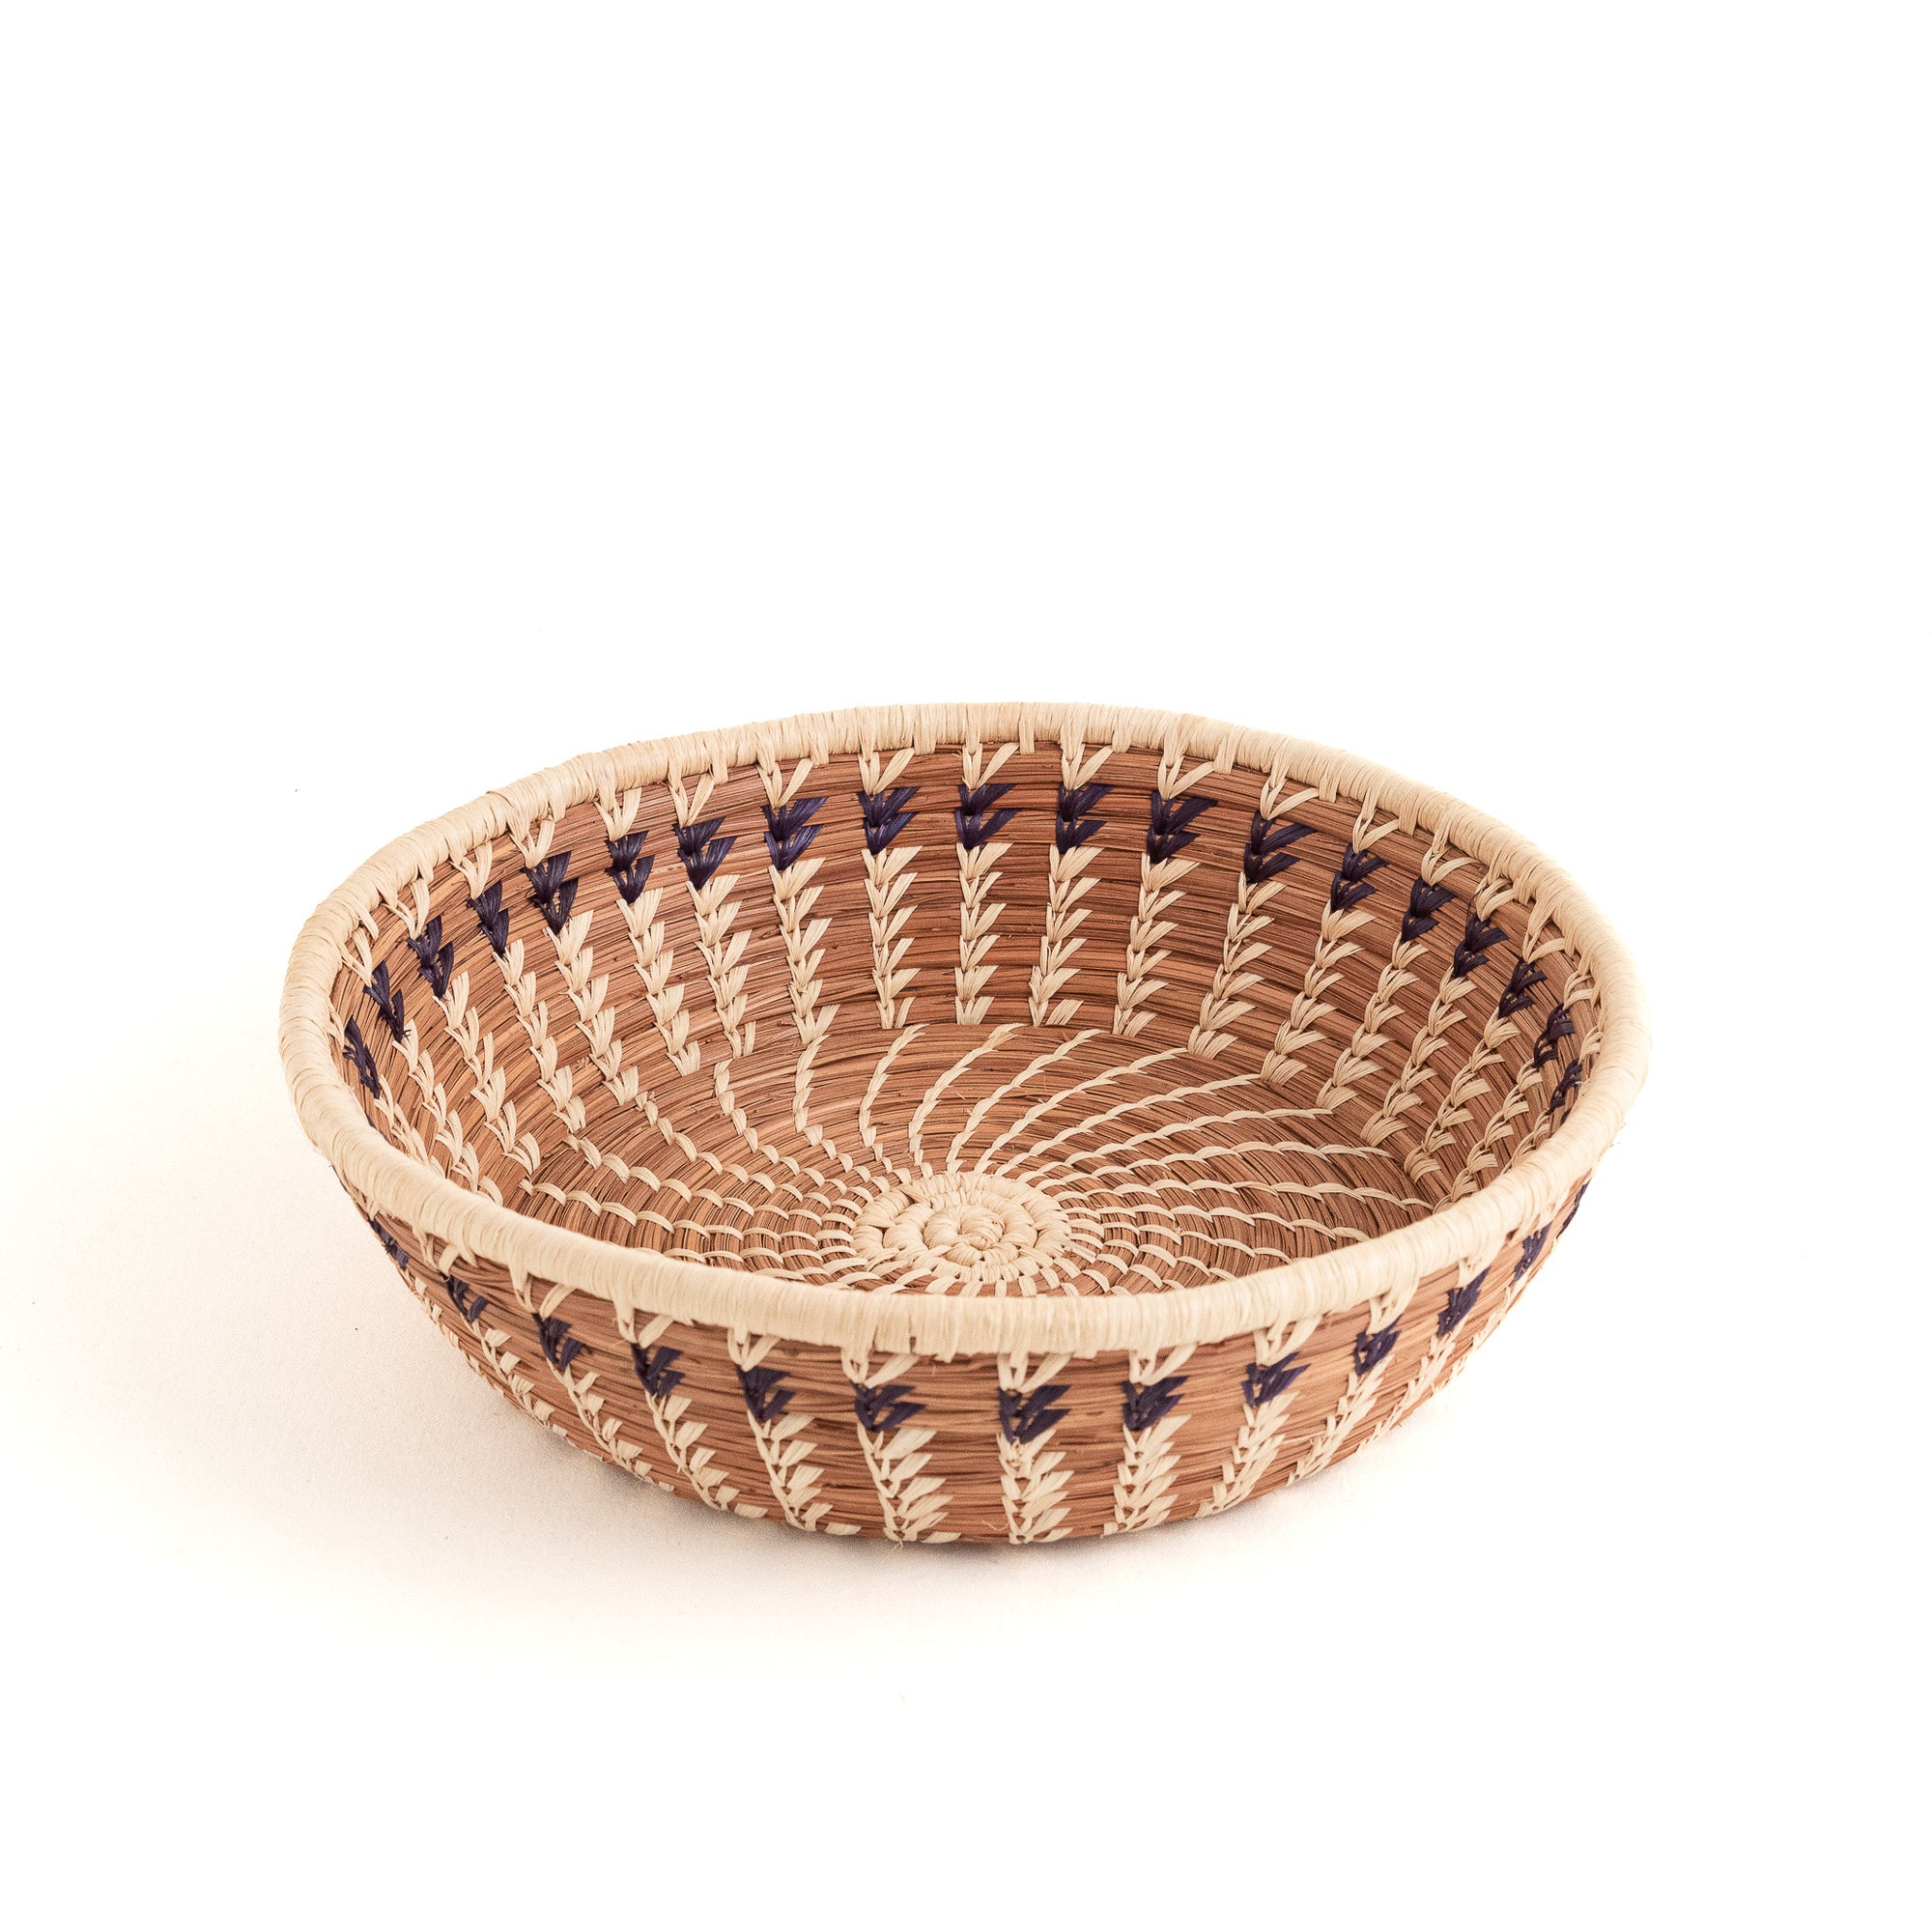 Elida pine needle basket